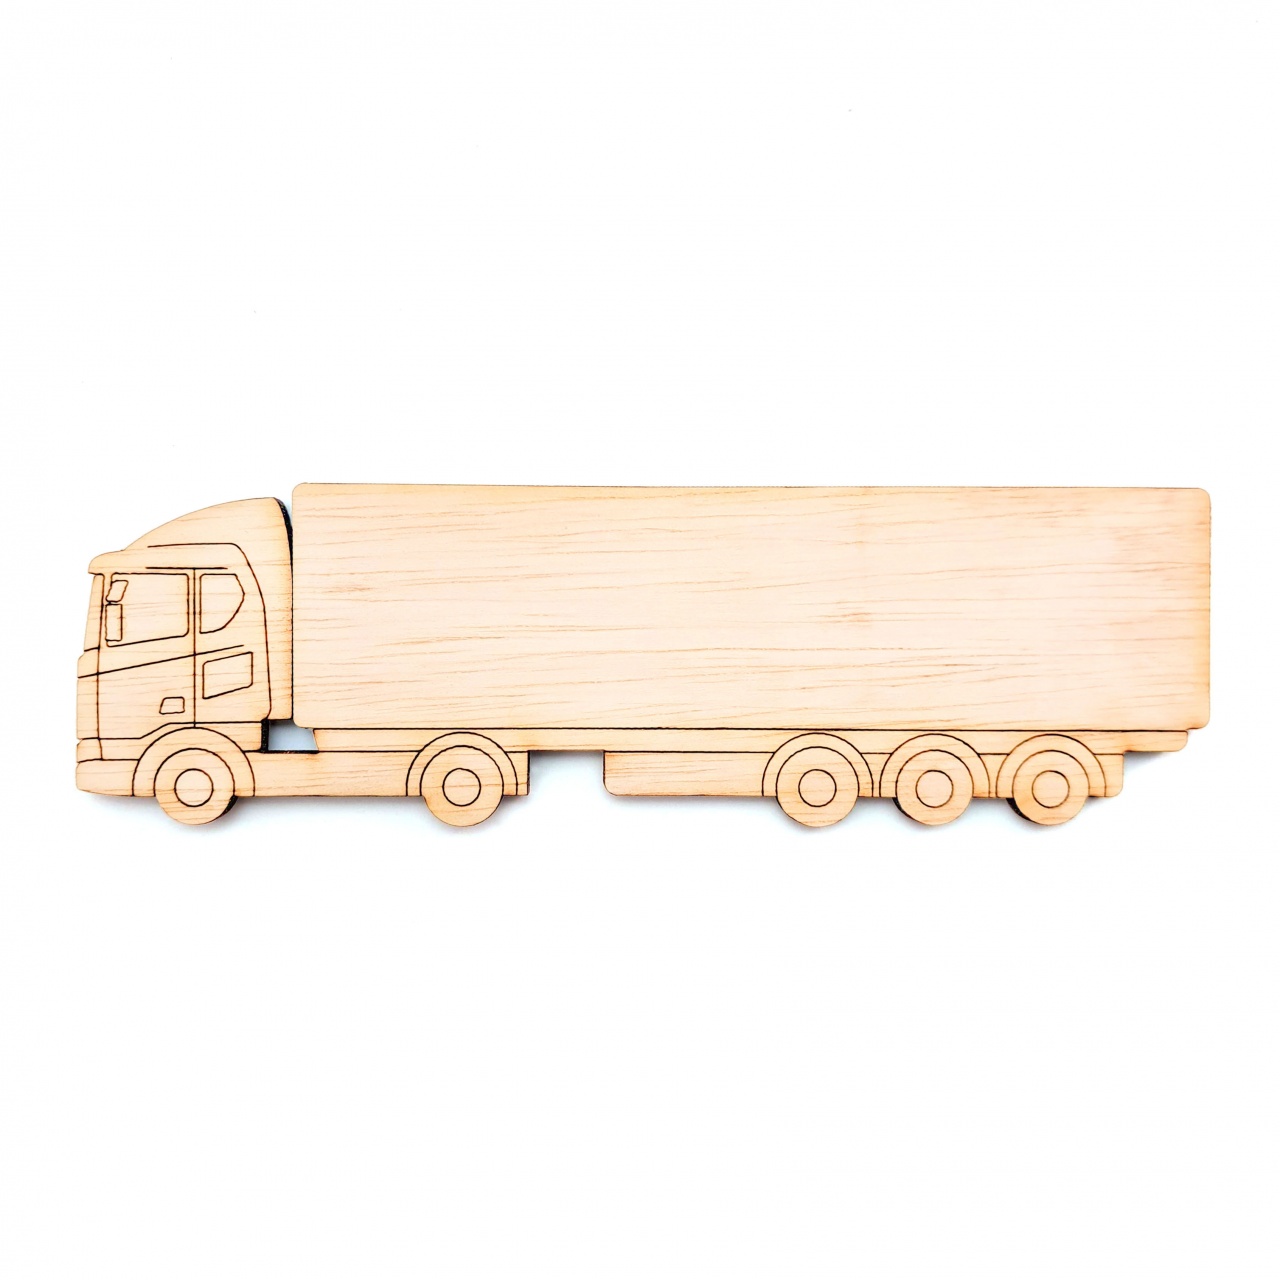 Camion TIR, 13×4 cm, placaj lemn :: 13 cm